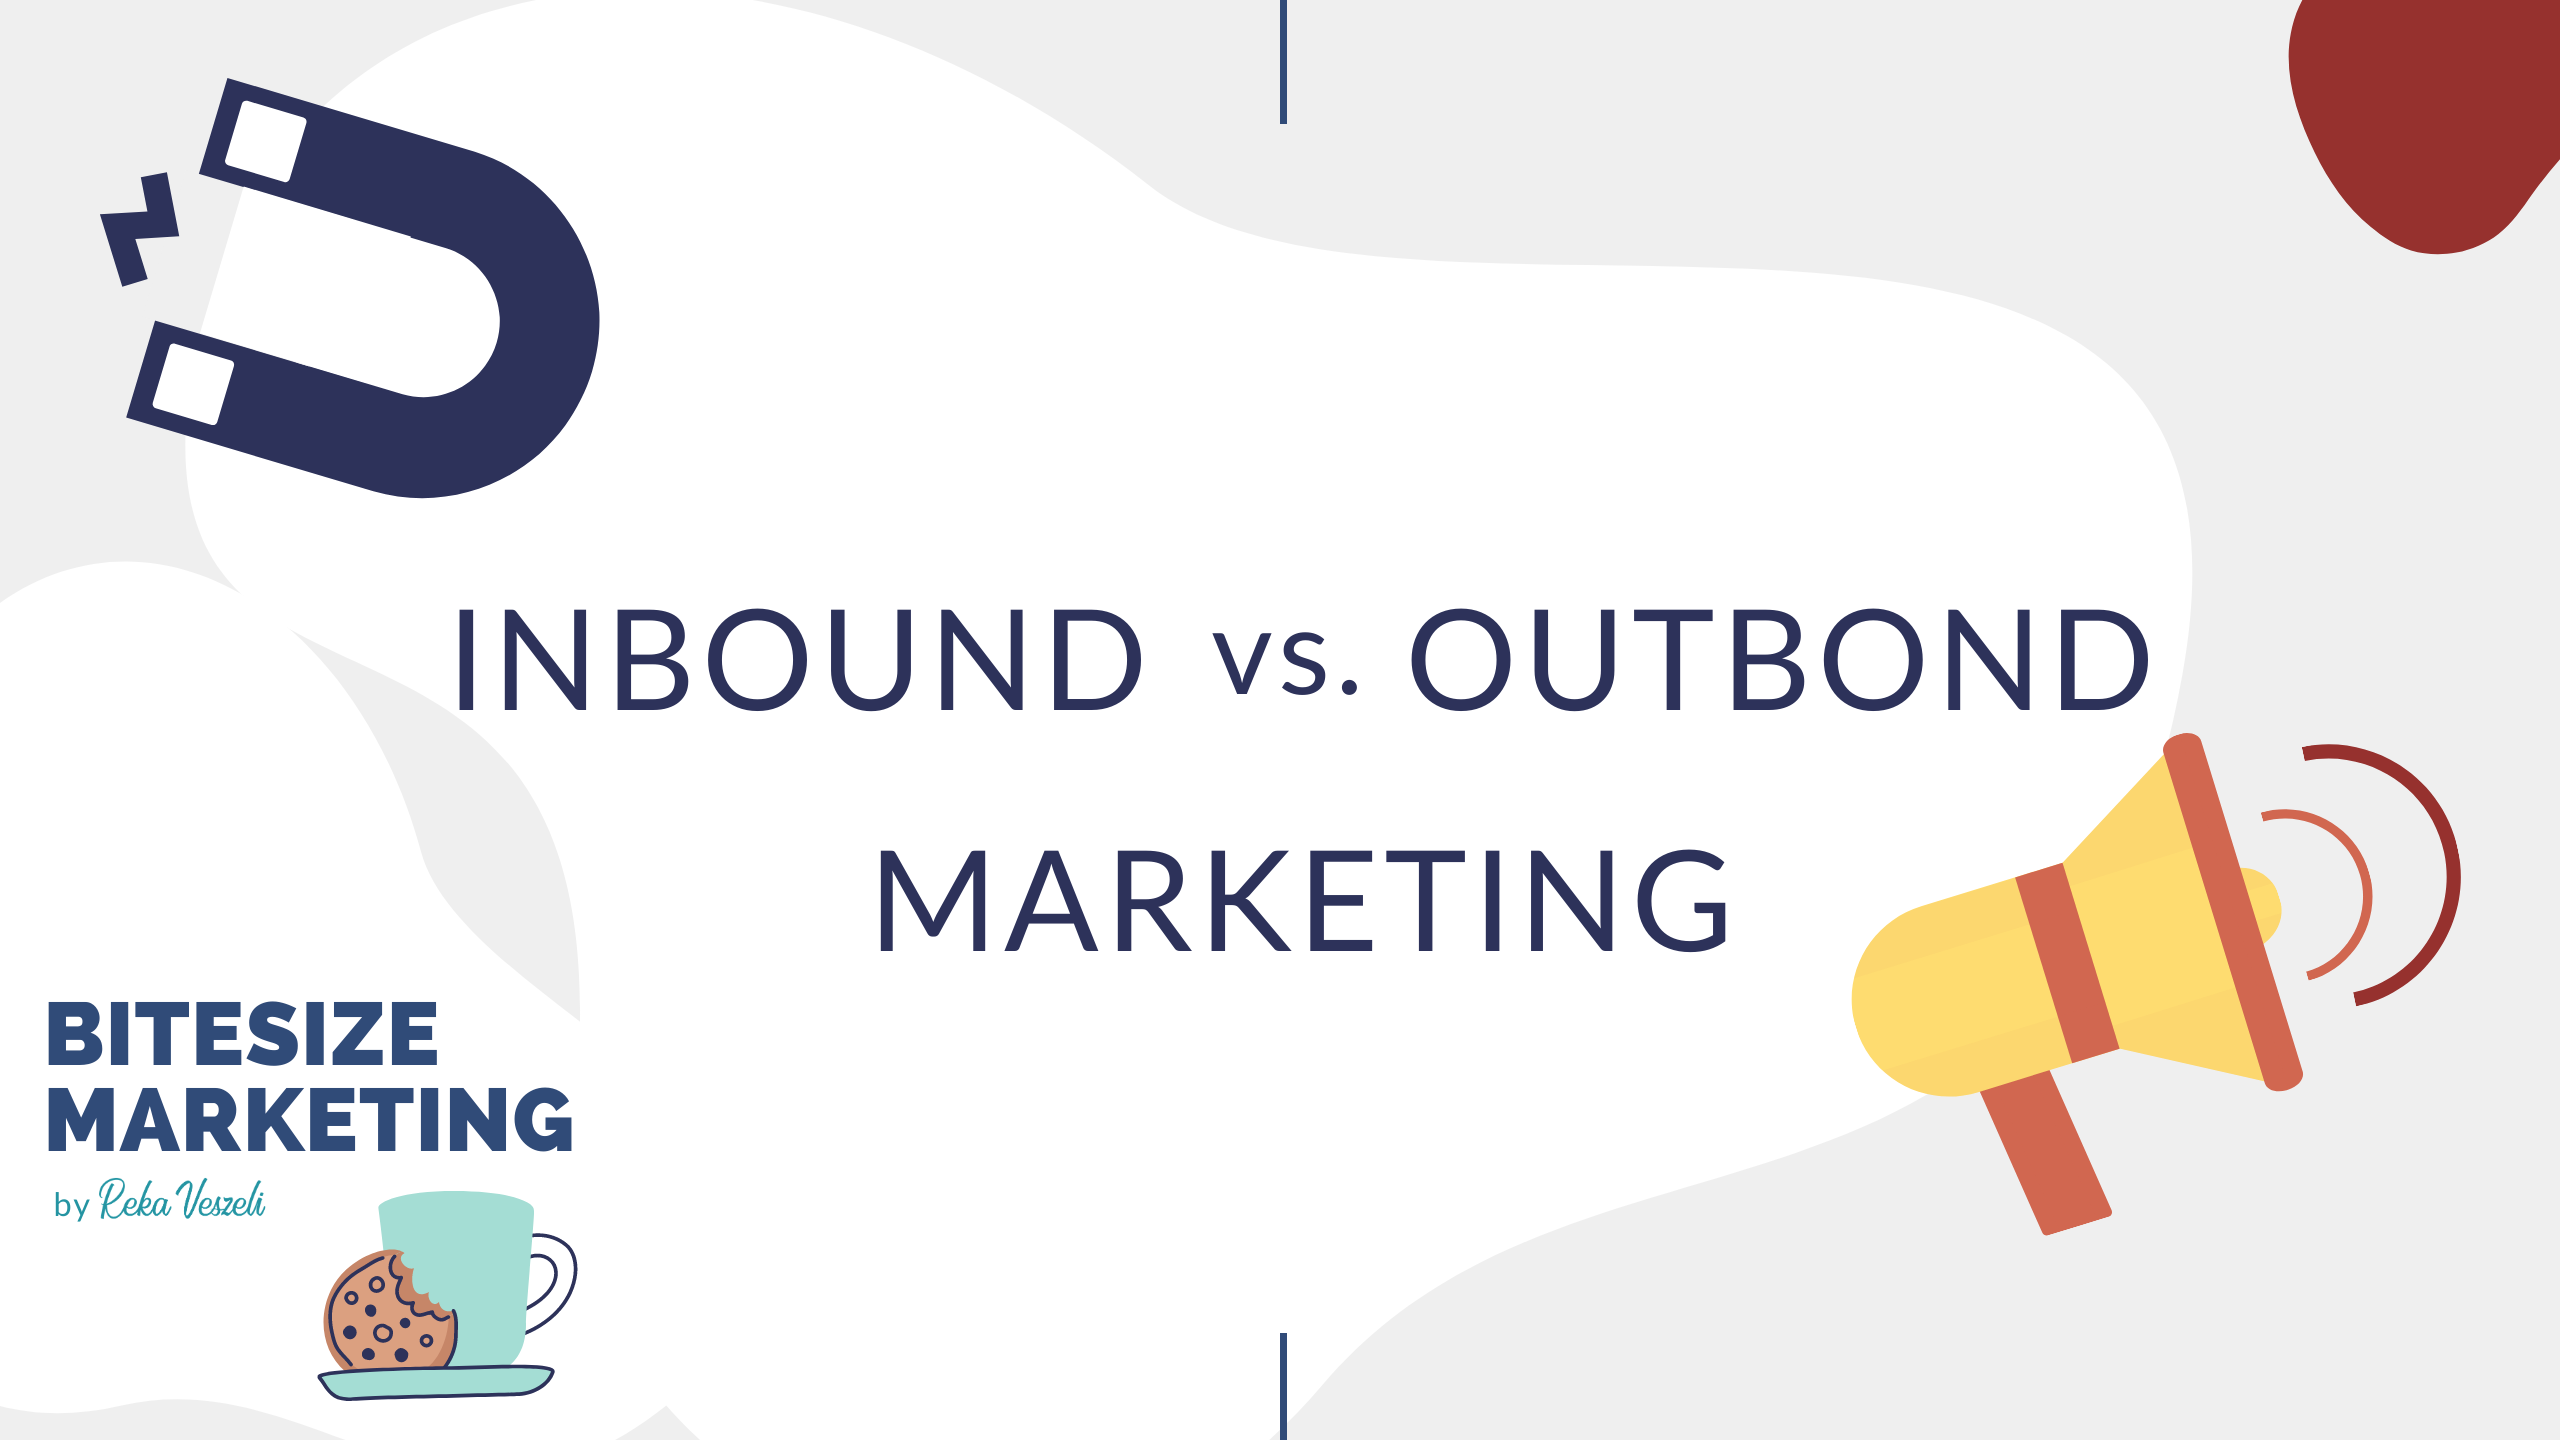 BiteSize, bite-size, snackable, marketing, marketing tips, basics of marketing, inbound marketing, outbound marketing, inbound vs outbound